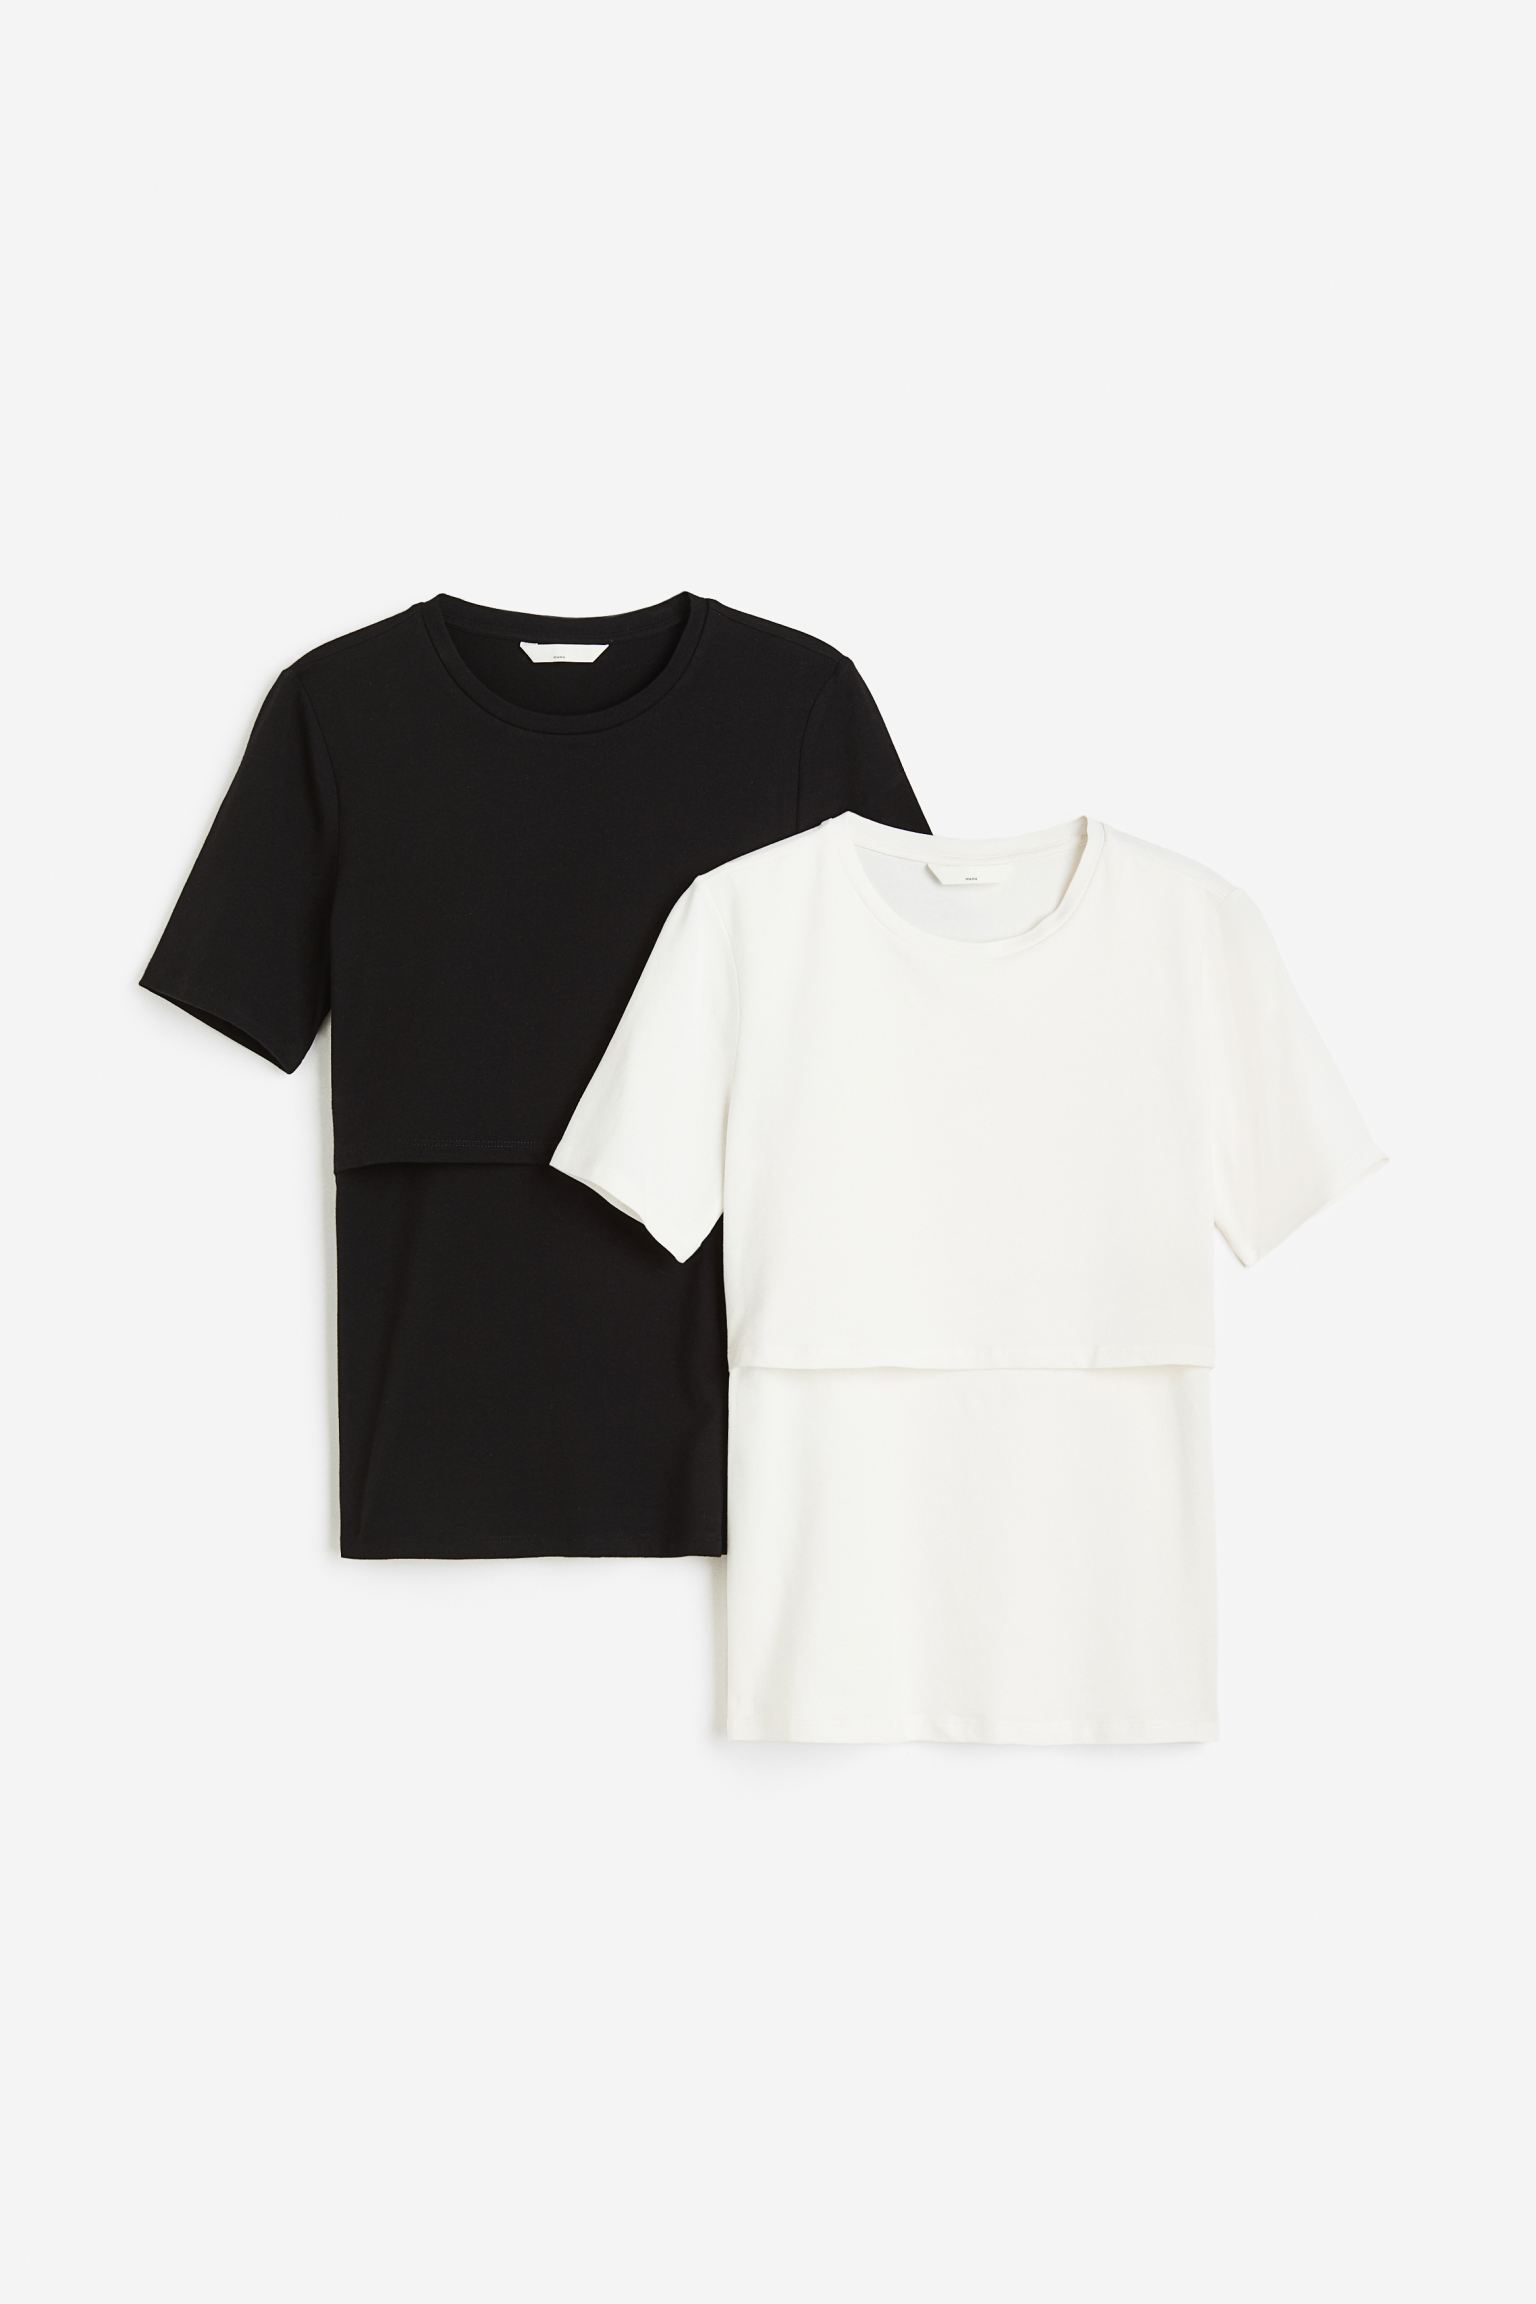 Комплект футболок женских H&M 1175052002 черных XL (доставка из-за рубежа)